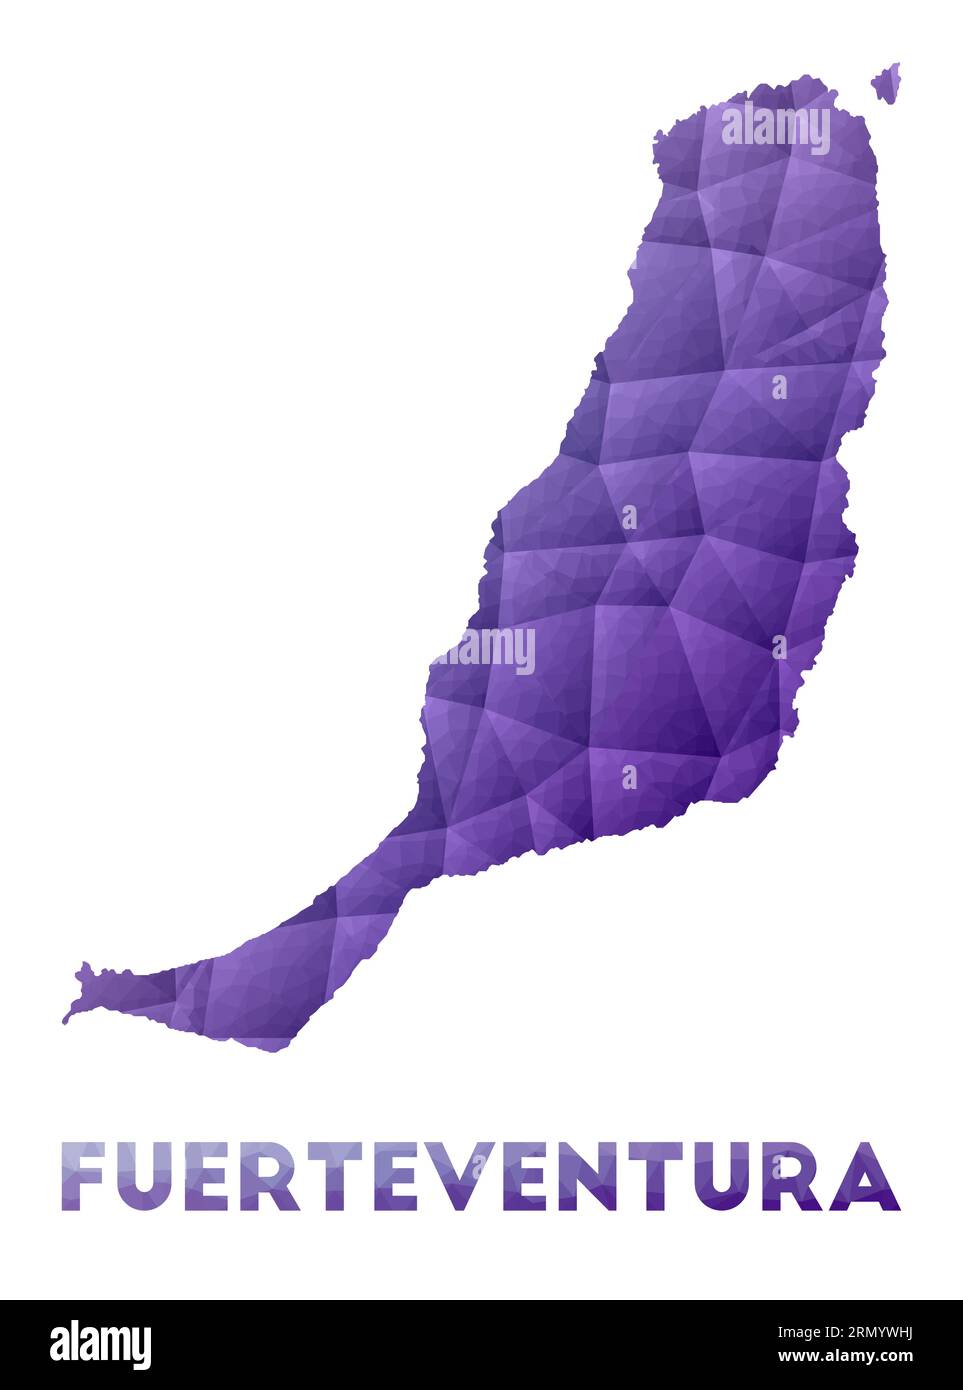 Plan de Fuerteventura. Illustration basse poly de l'île. Motif géométrique violet. Illustration vectorielle polygonale. Illustration de Vecteur